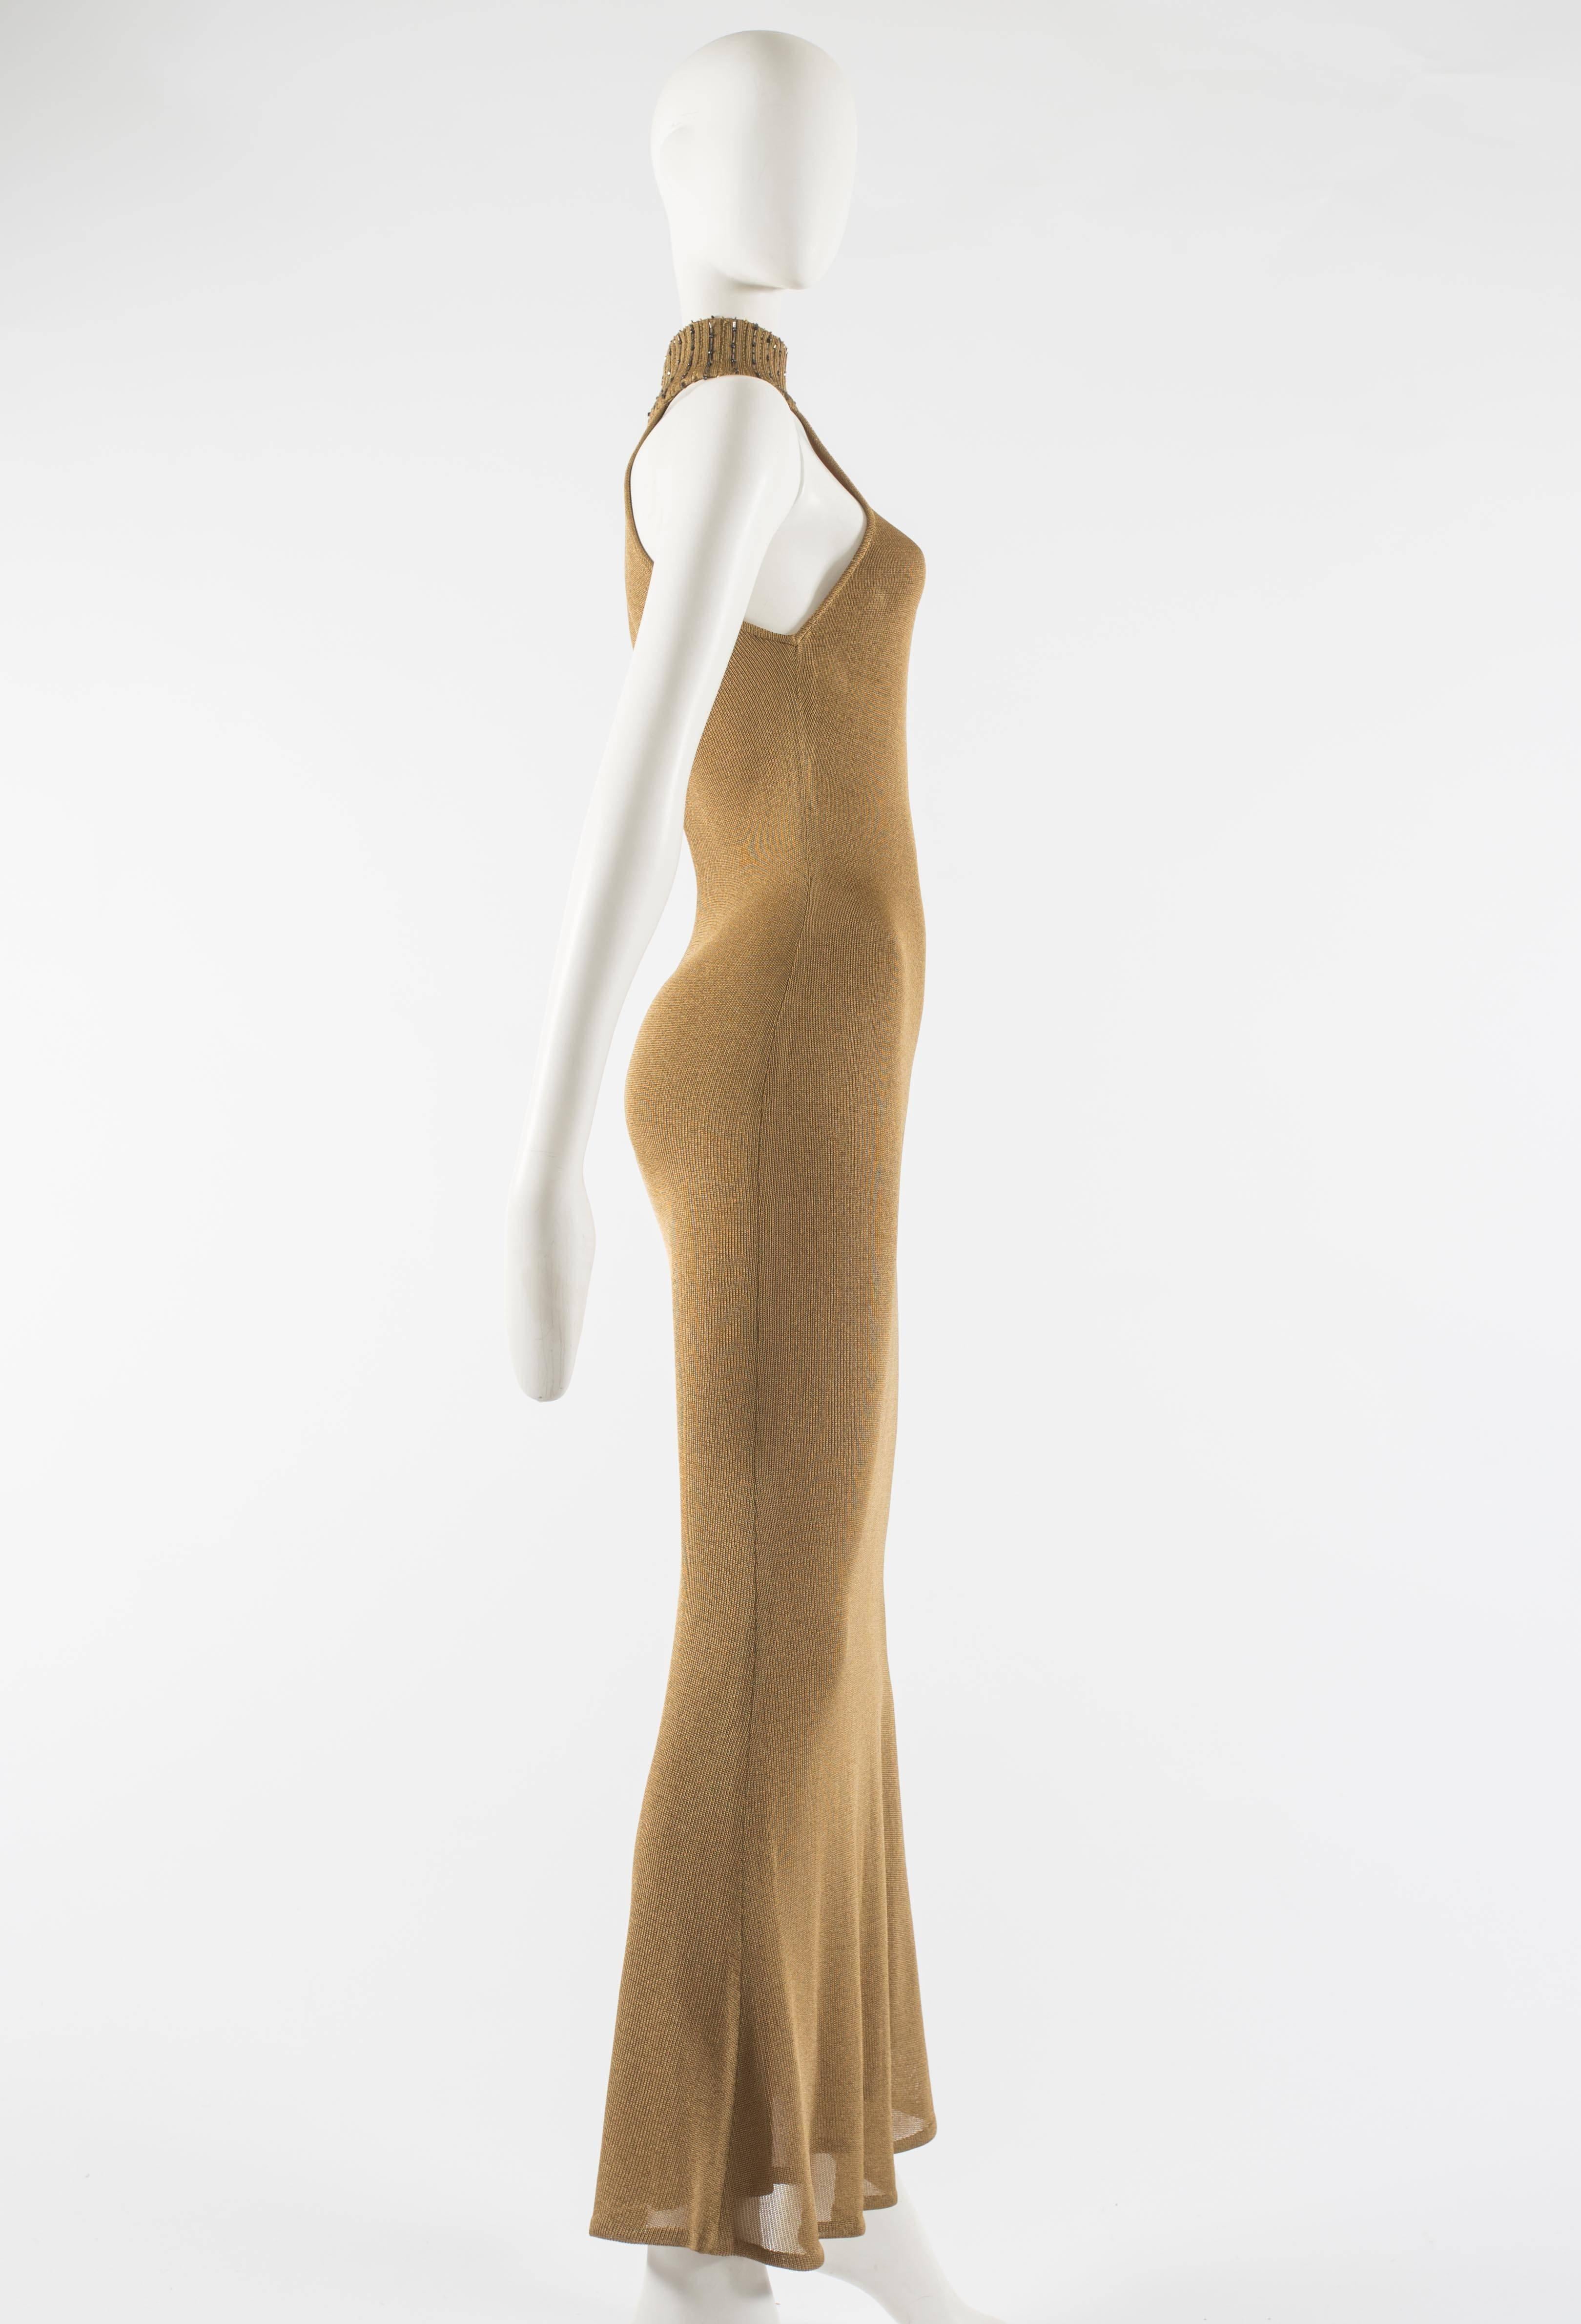 Women's Gianni Versace 1997 gold knitted evening dress